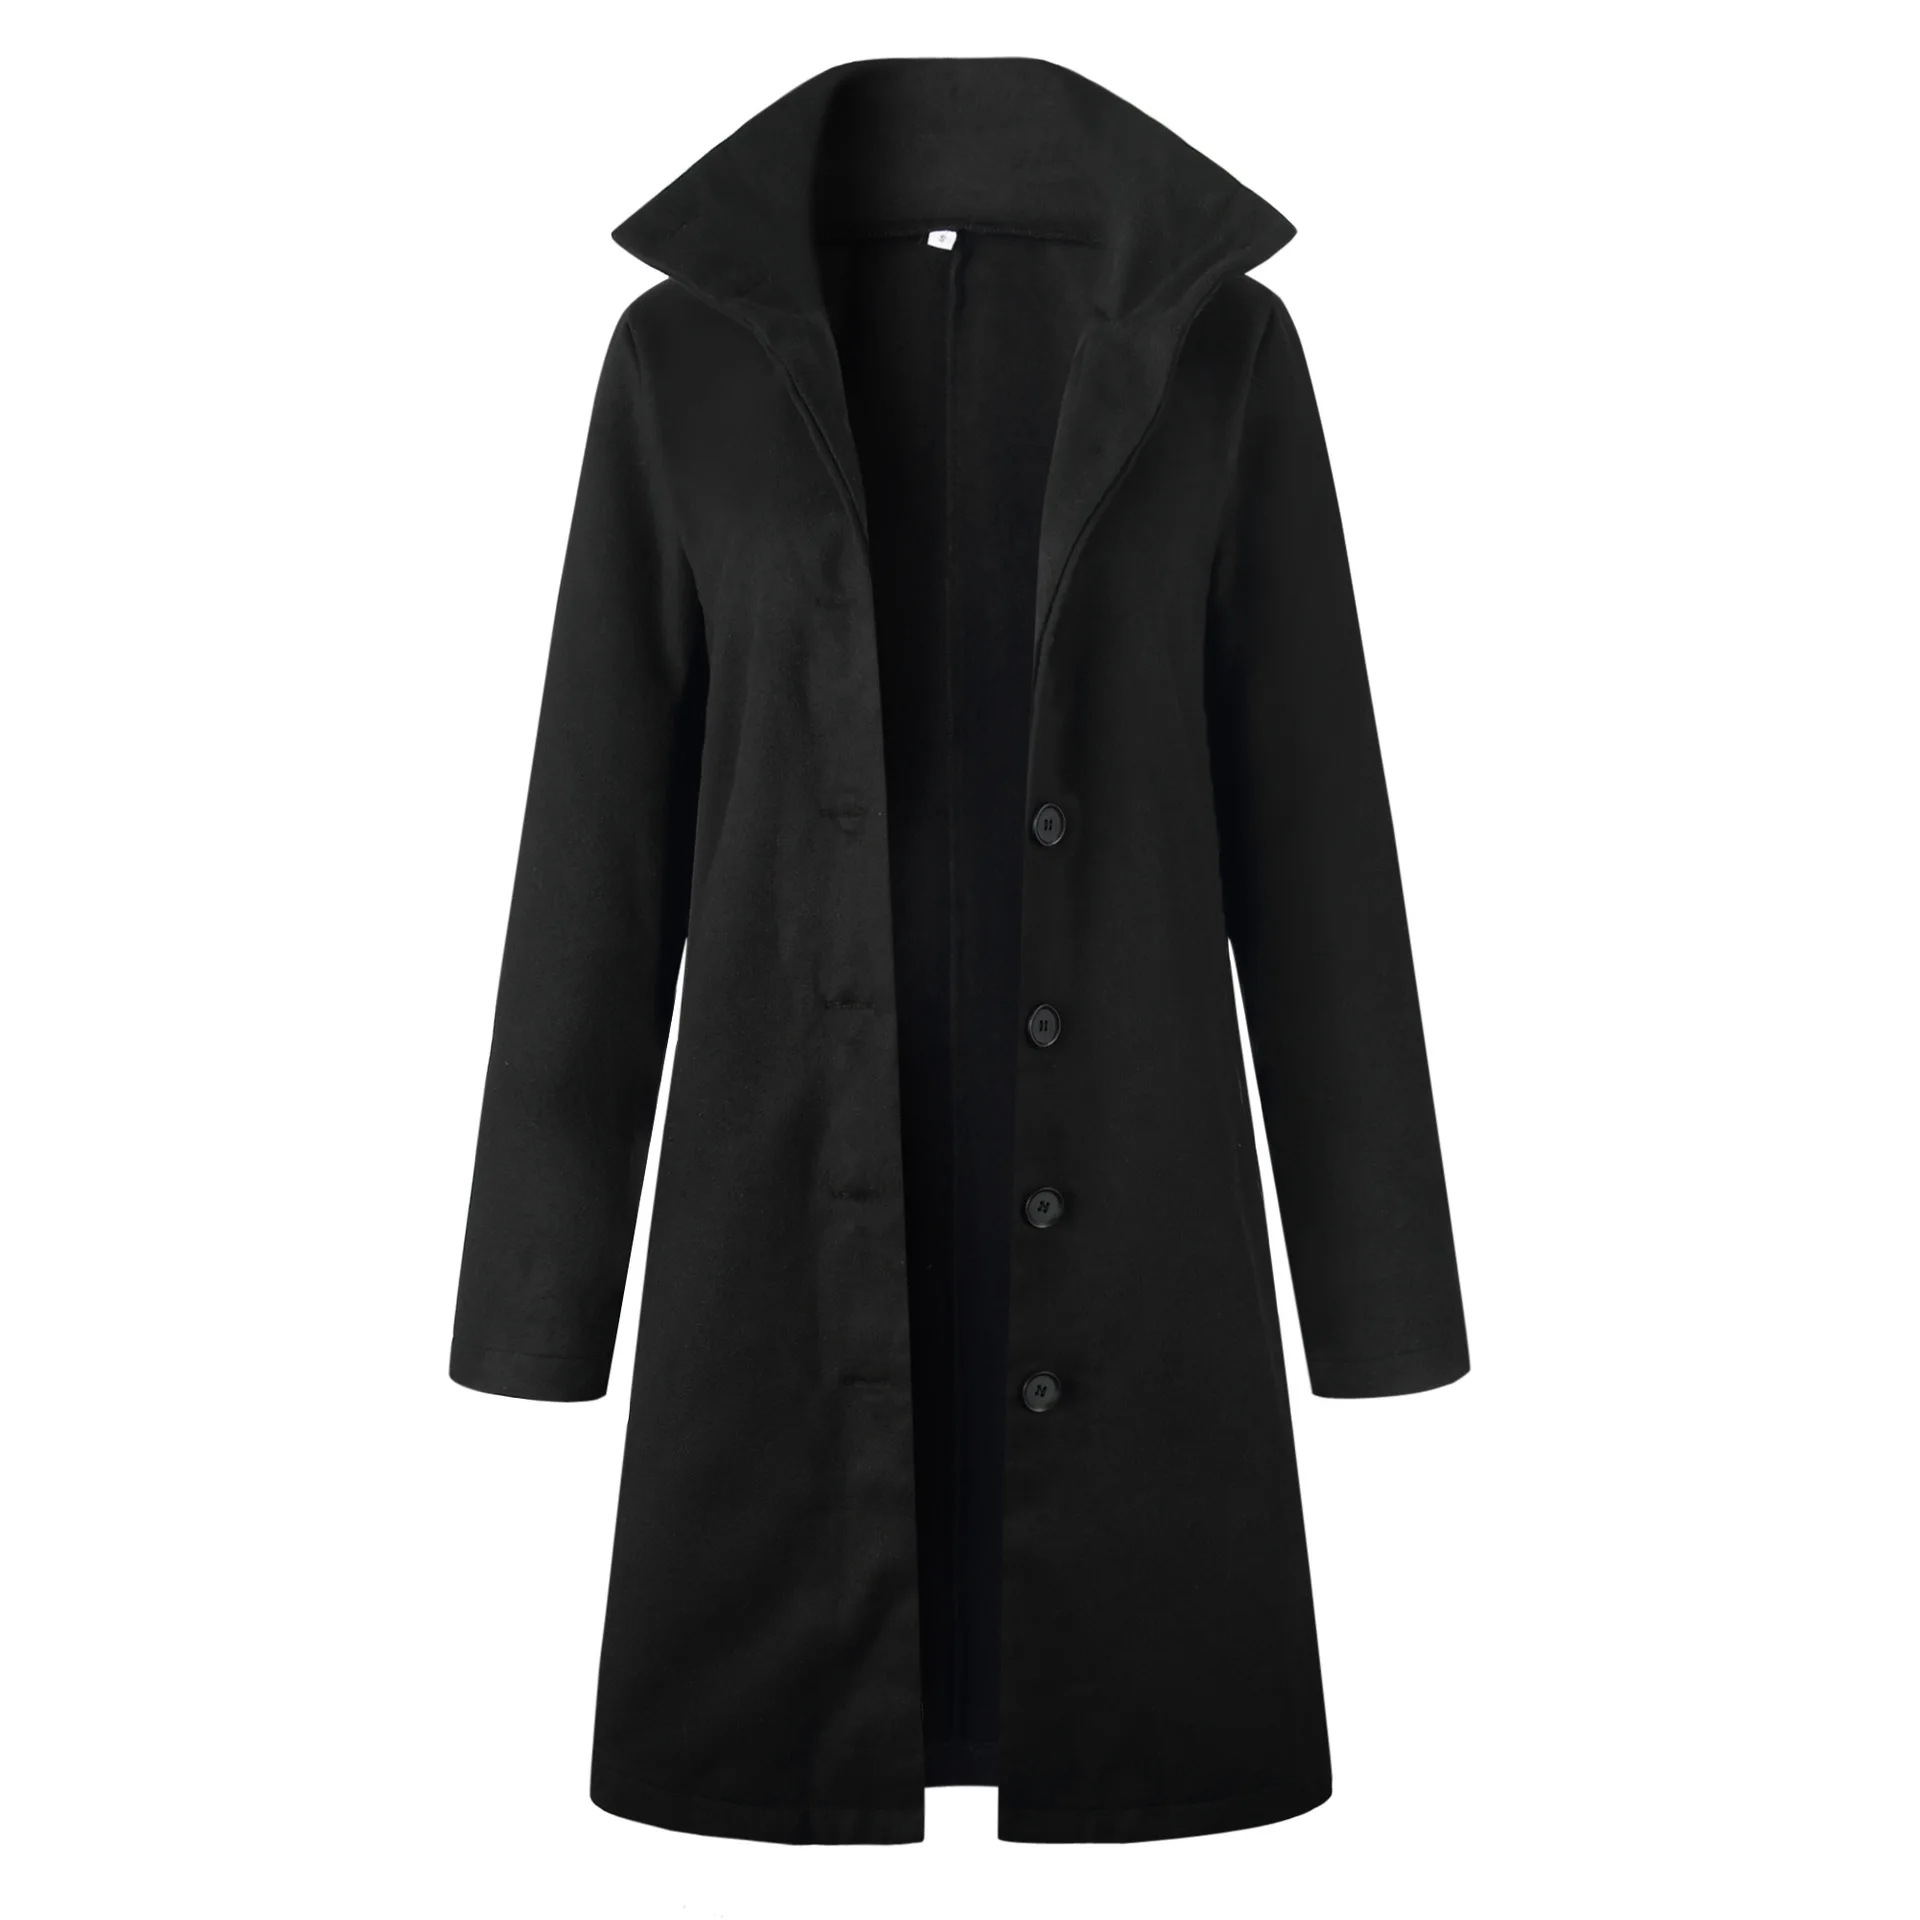 Женское шерстяное пальто на одной пуговице с карманами, кардиган, куртка плюс, длинная, Минималистичная, элегантная, с длинным рукавом, облегающая, для офиса, леди, наряды